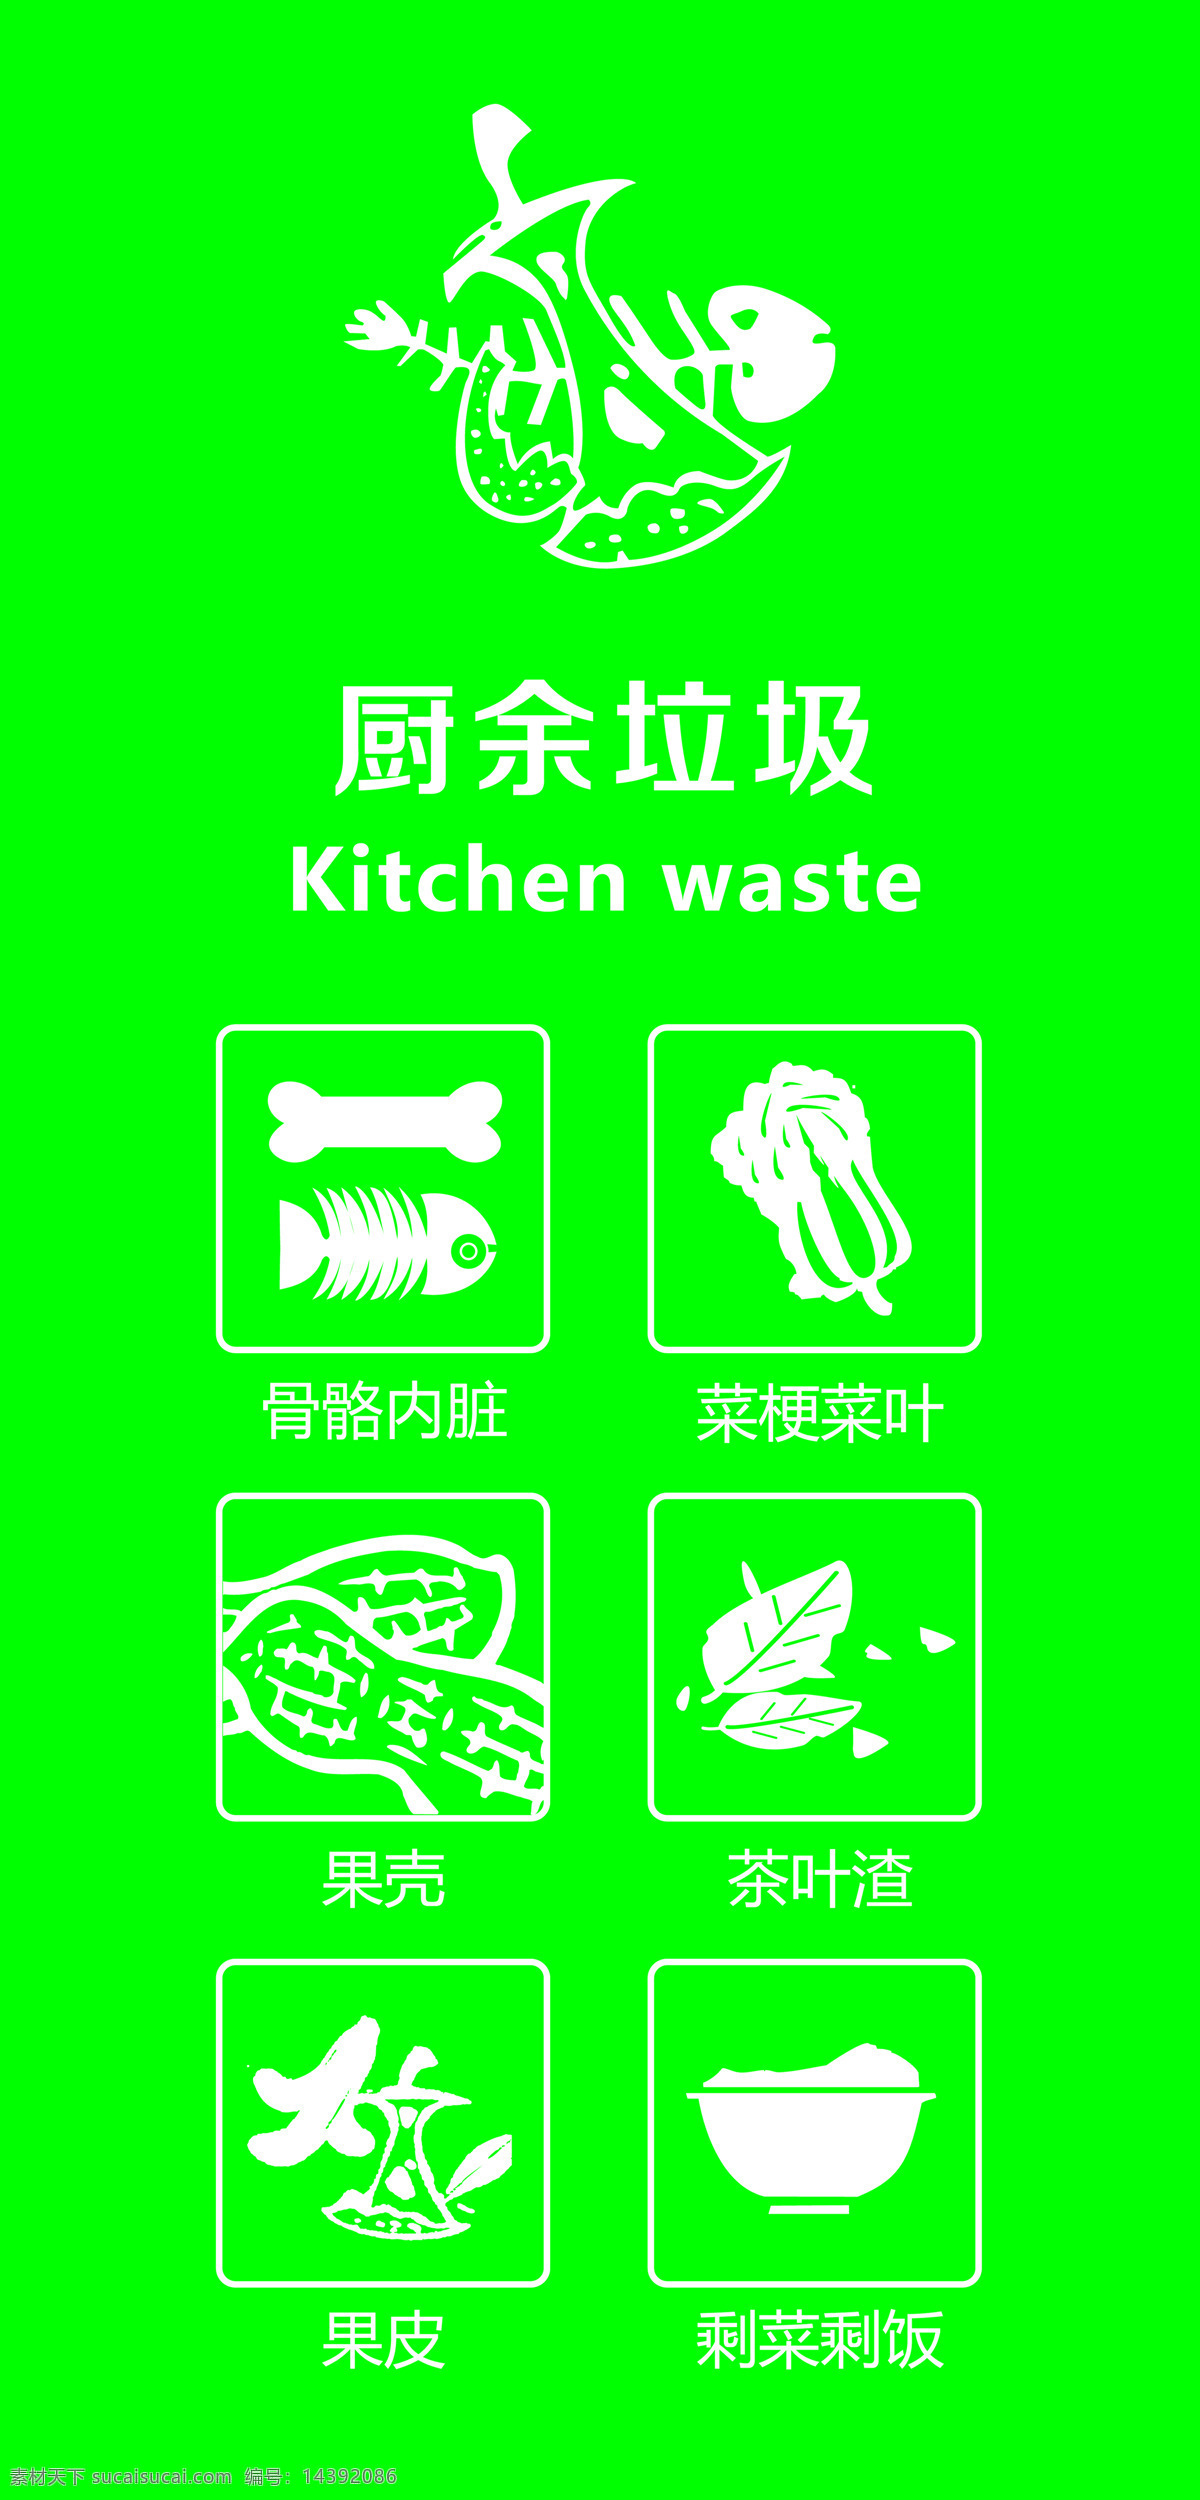 垃圾分类图片 标准 垃圾桶分类 厨余 四分类 标贴 招贴设计